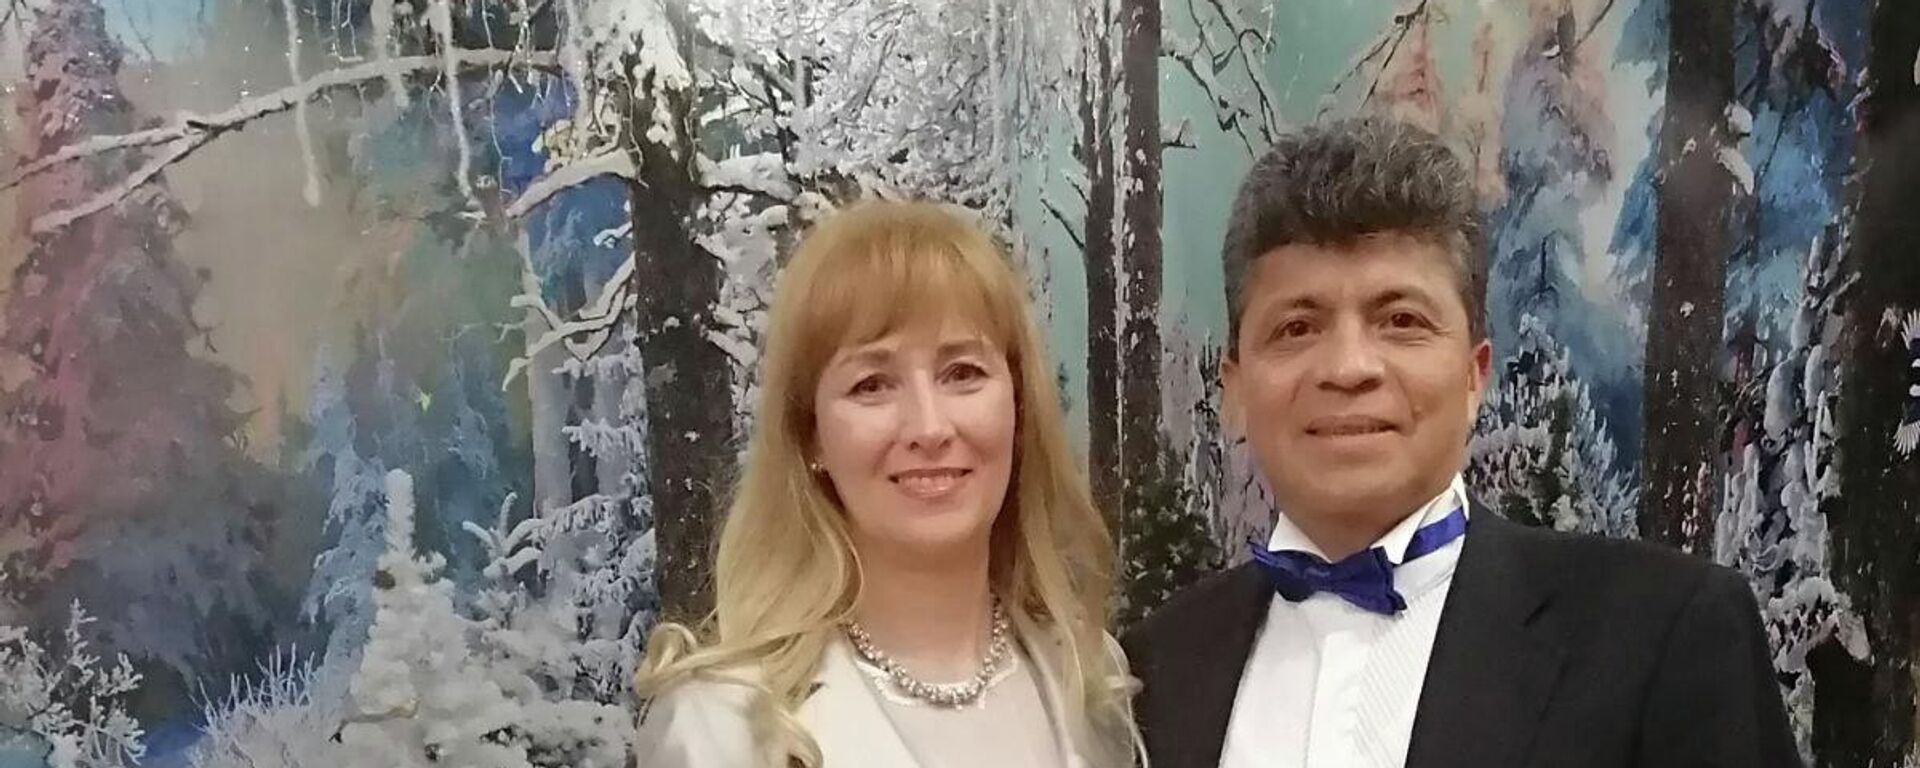 Luis Muñoz, migrante colombiano en Donetsk, se casó con una mujer rusa. - Sputnik Mundo, 1920, 25.02.2022